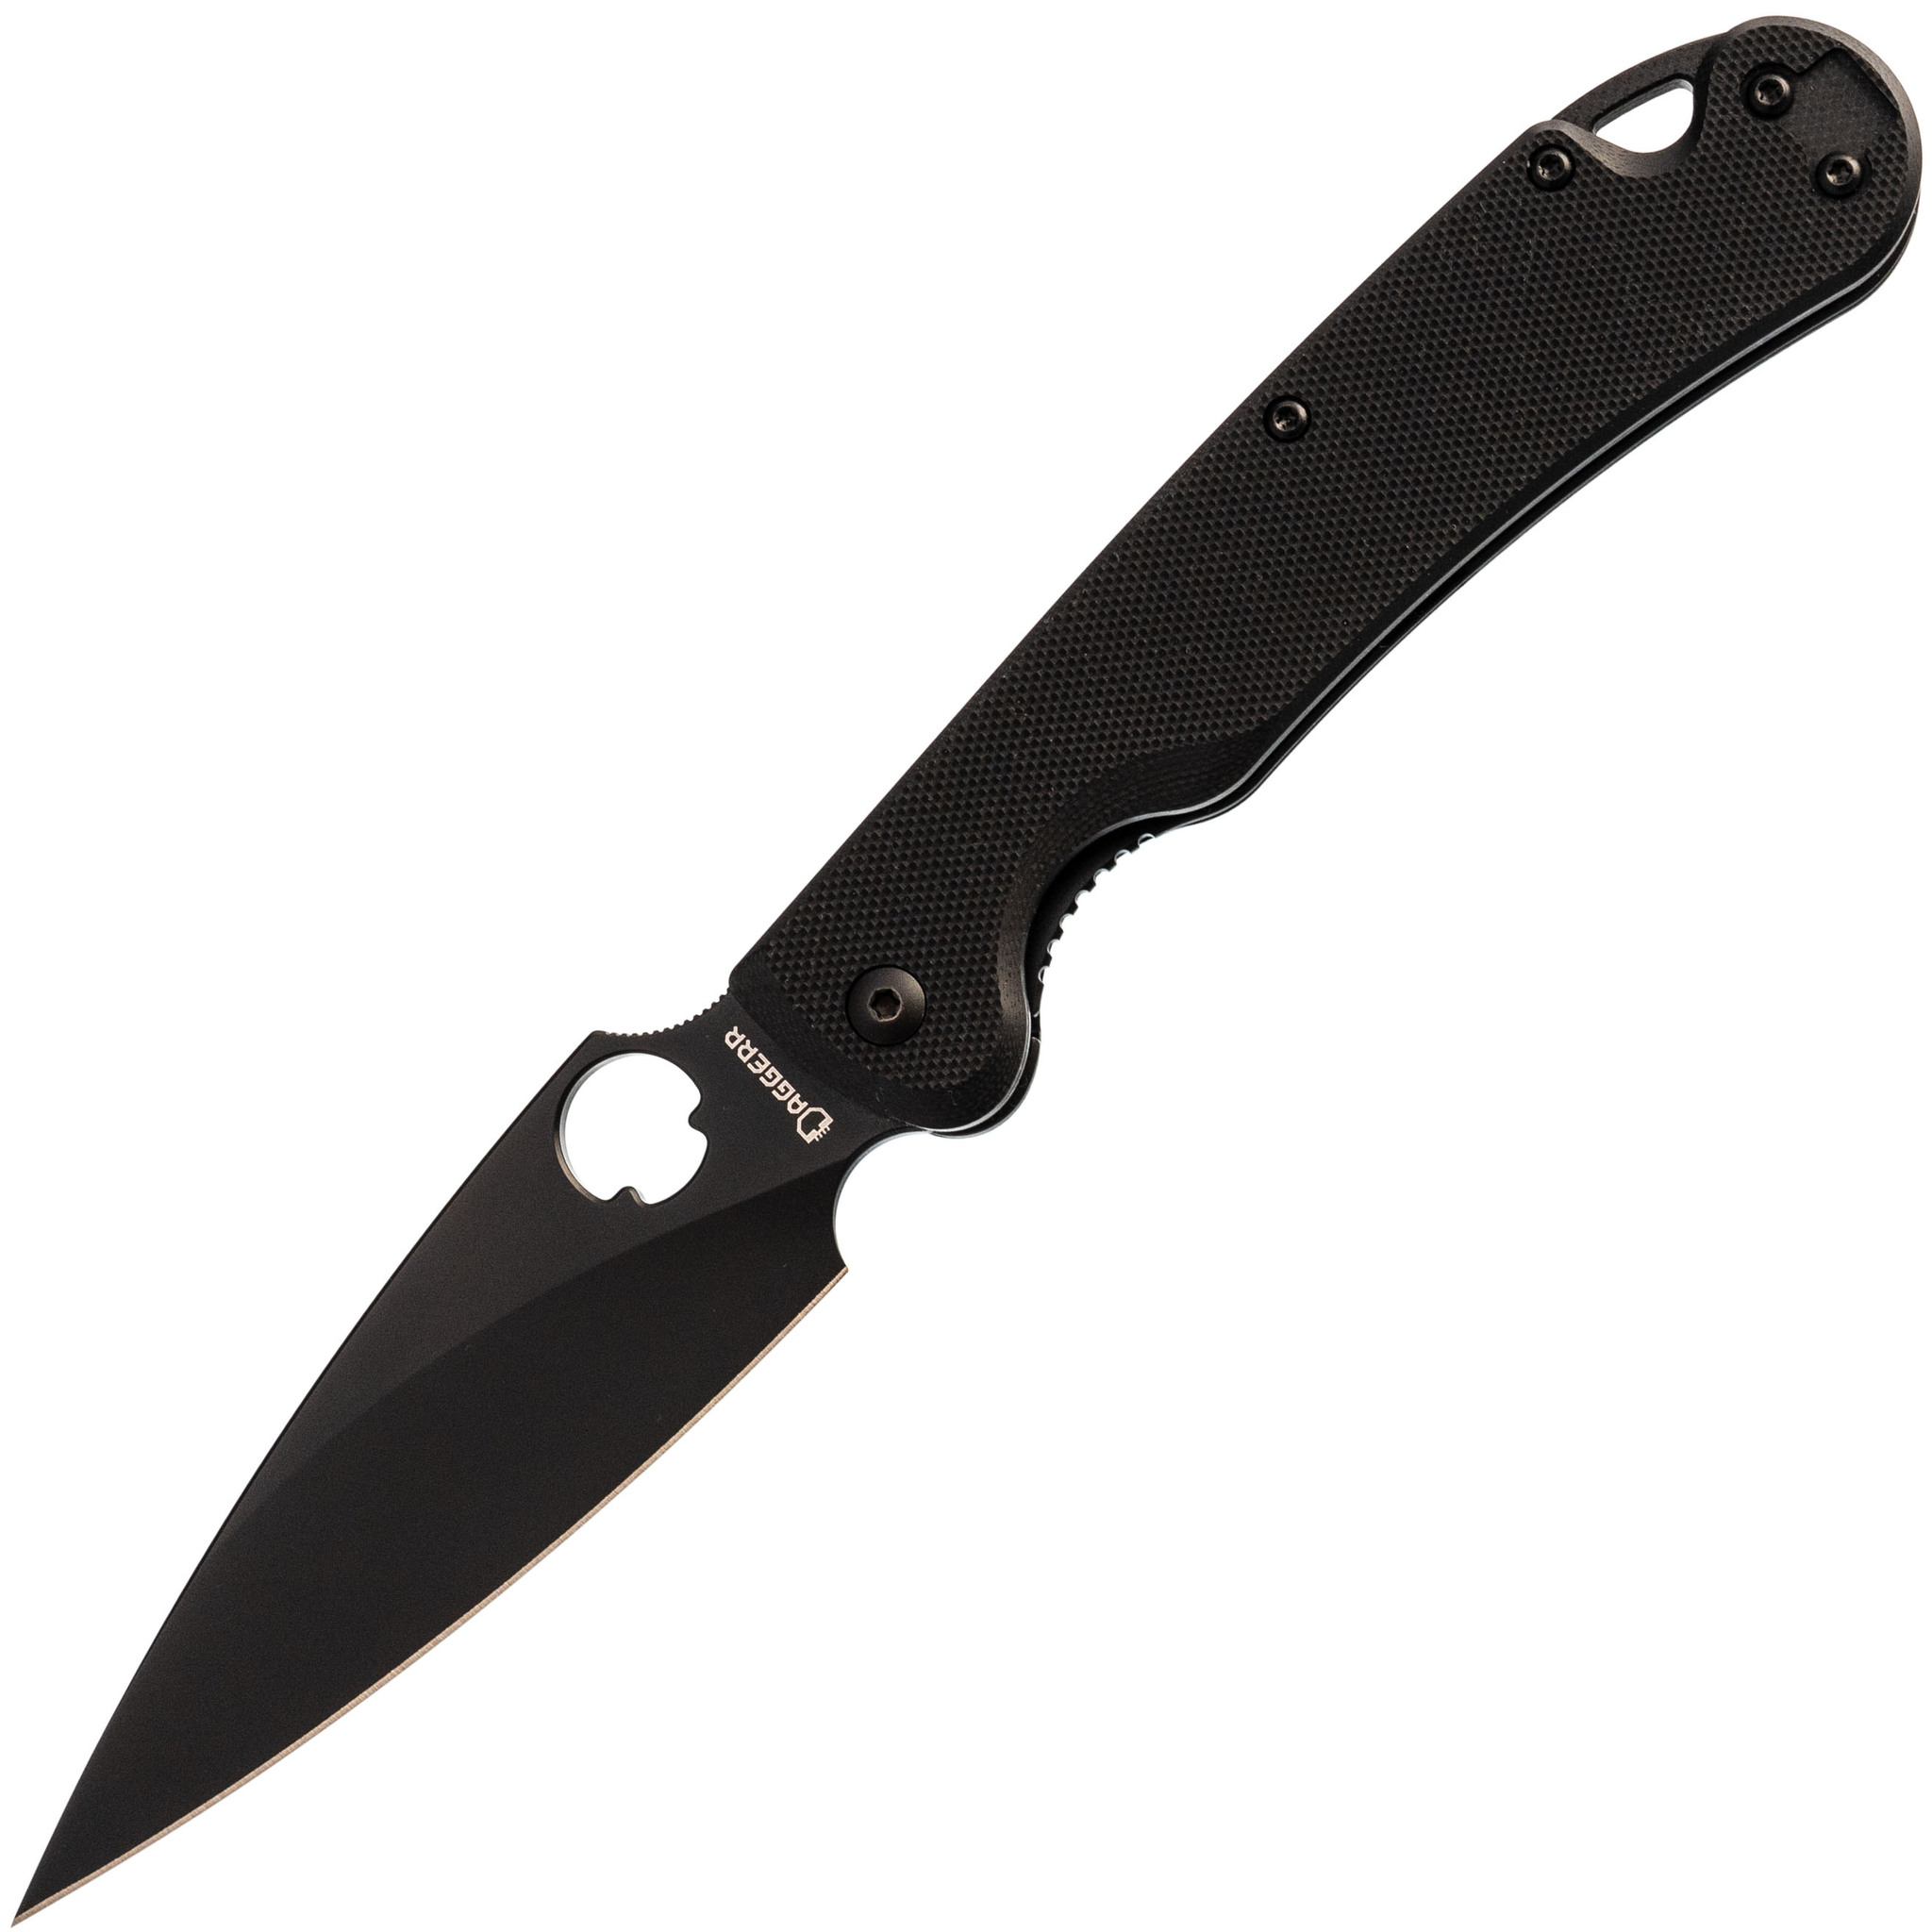 Складной нож Daggerr Sting All Black DLC, сталь D2, рукоять G10